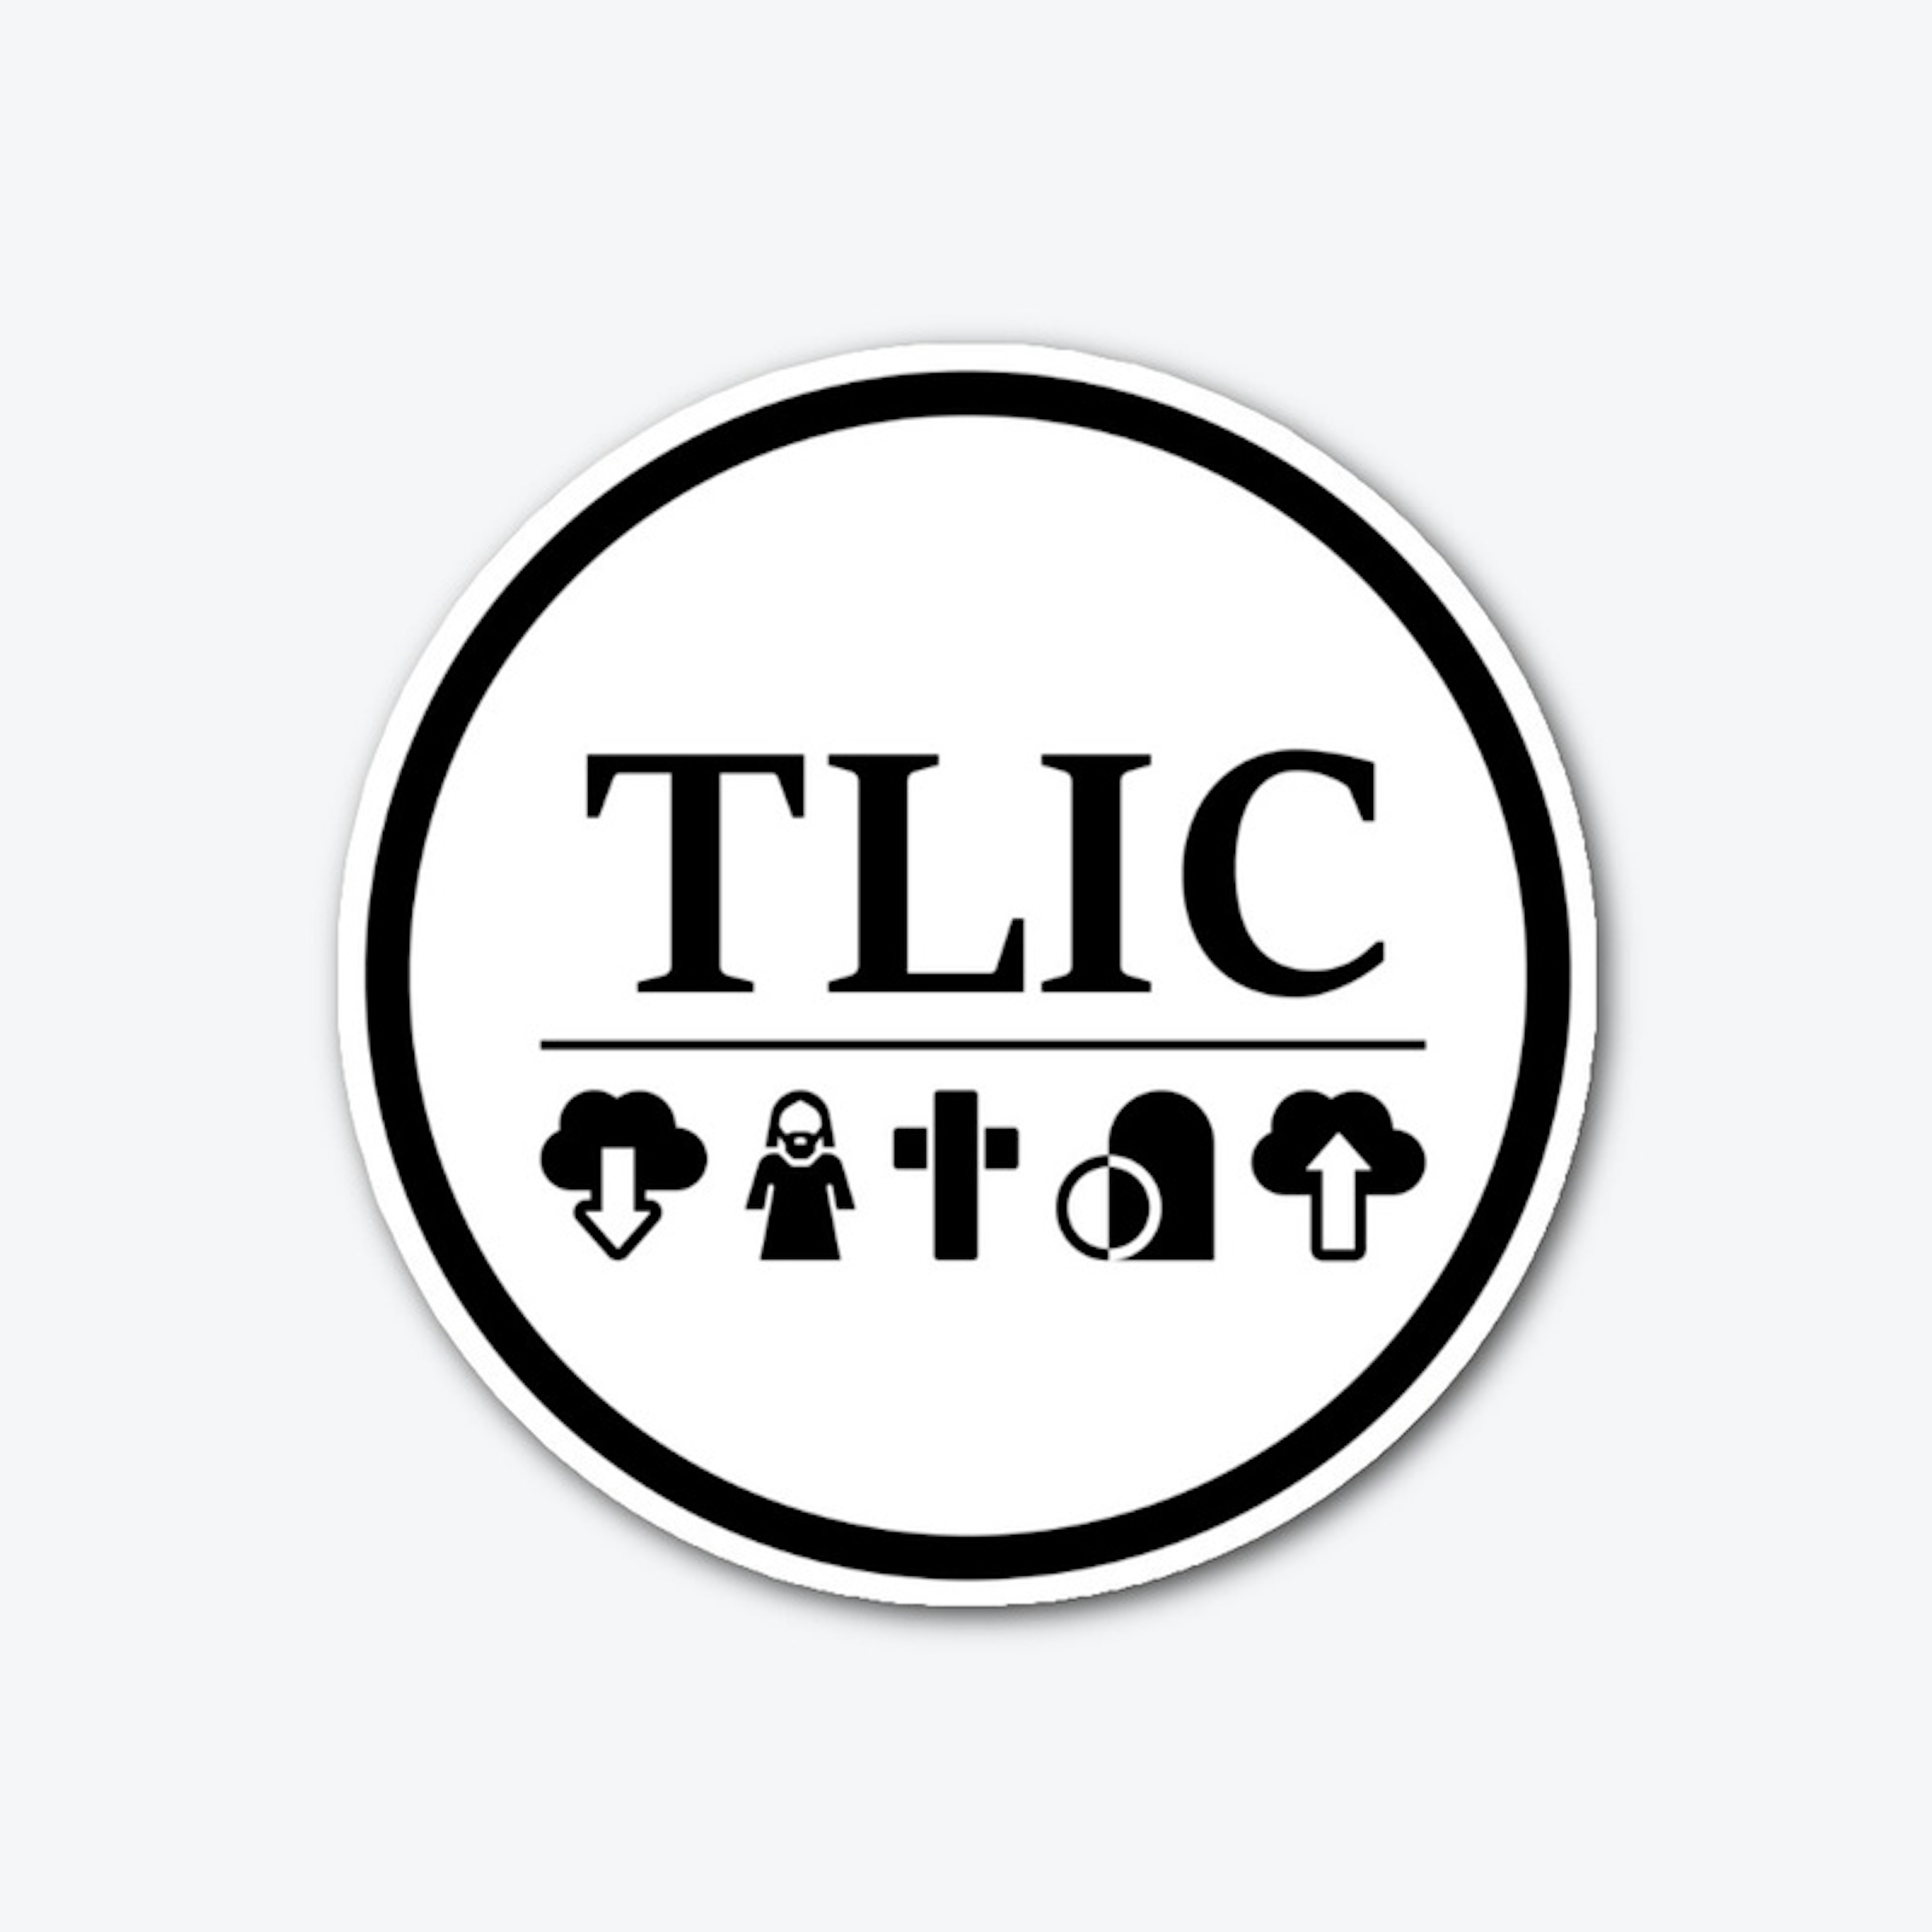 TLIC round sticker white